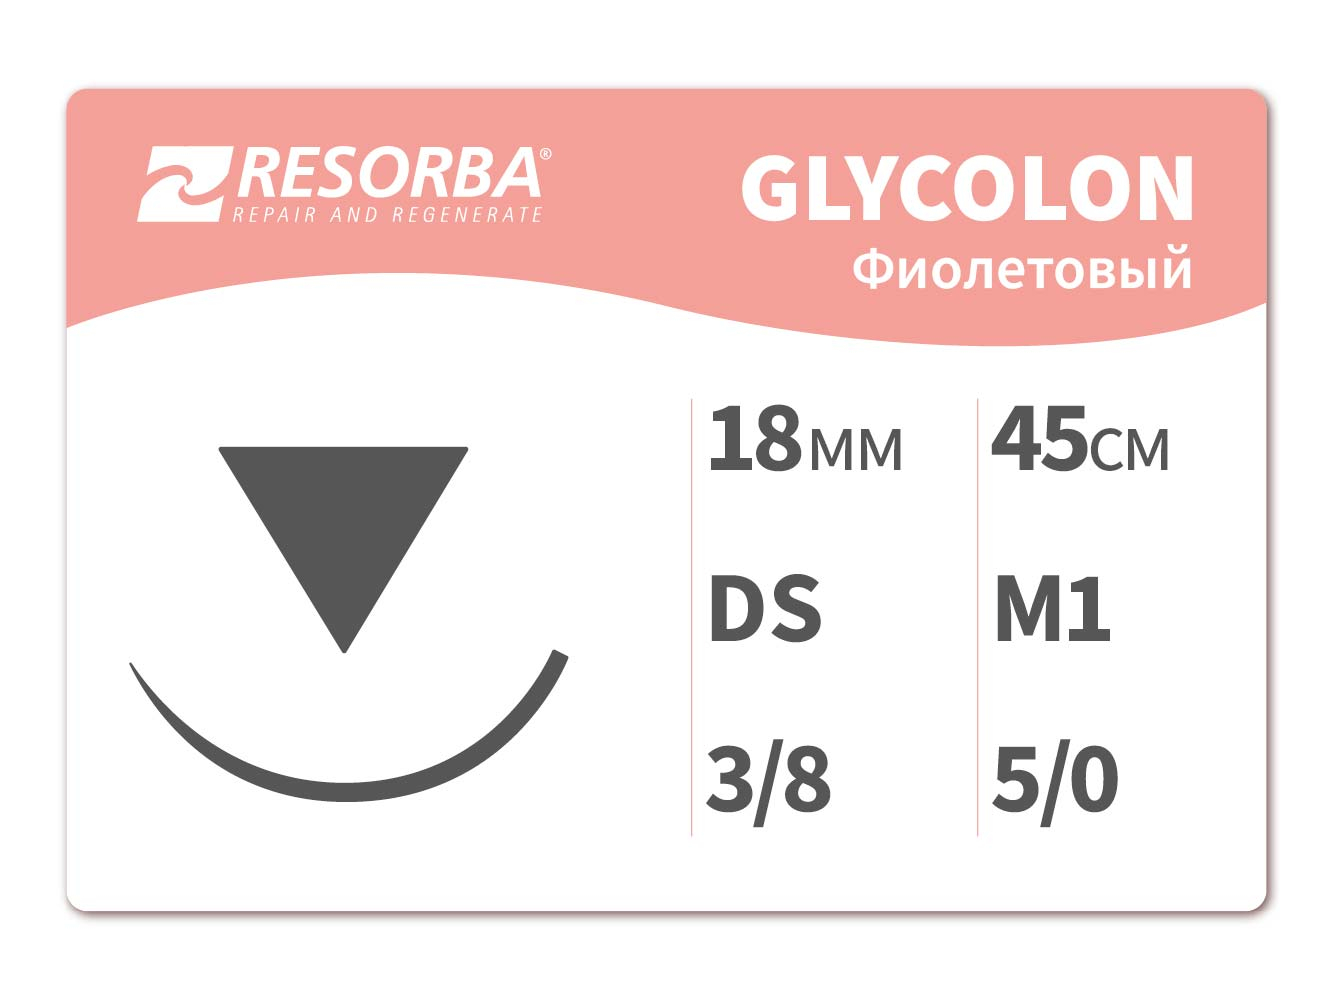 41421 Гликолон фиолетовый М1, (5/0), 45см, DS18.PB, Ресорба/RESORBA (Германия)